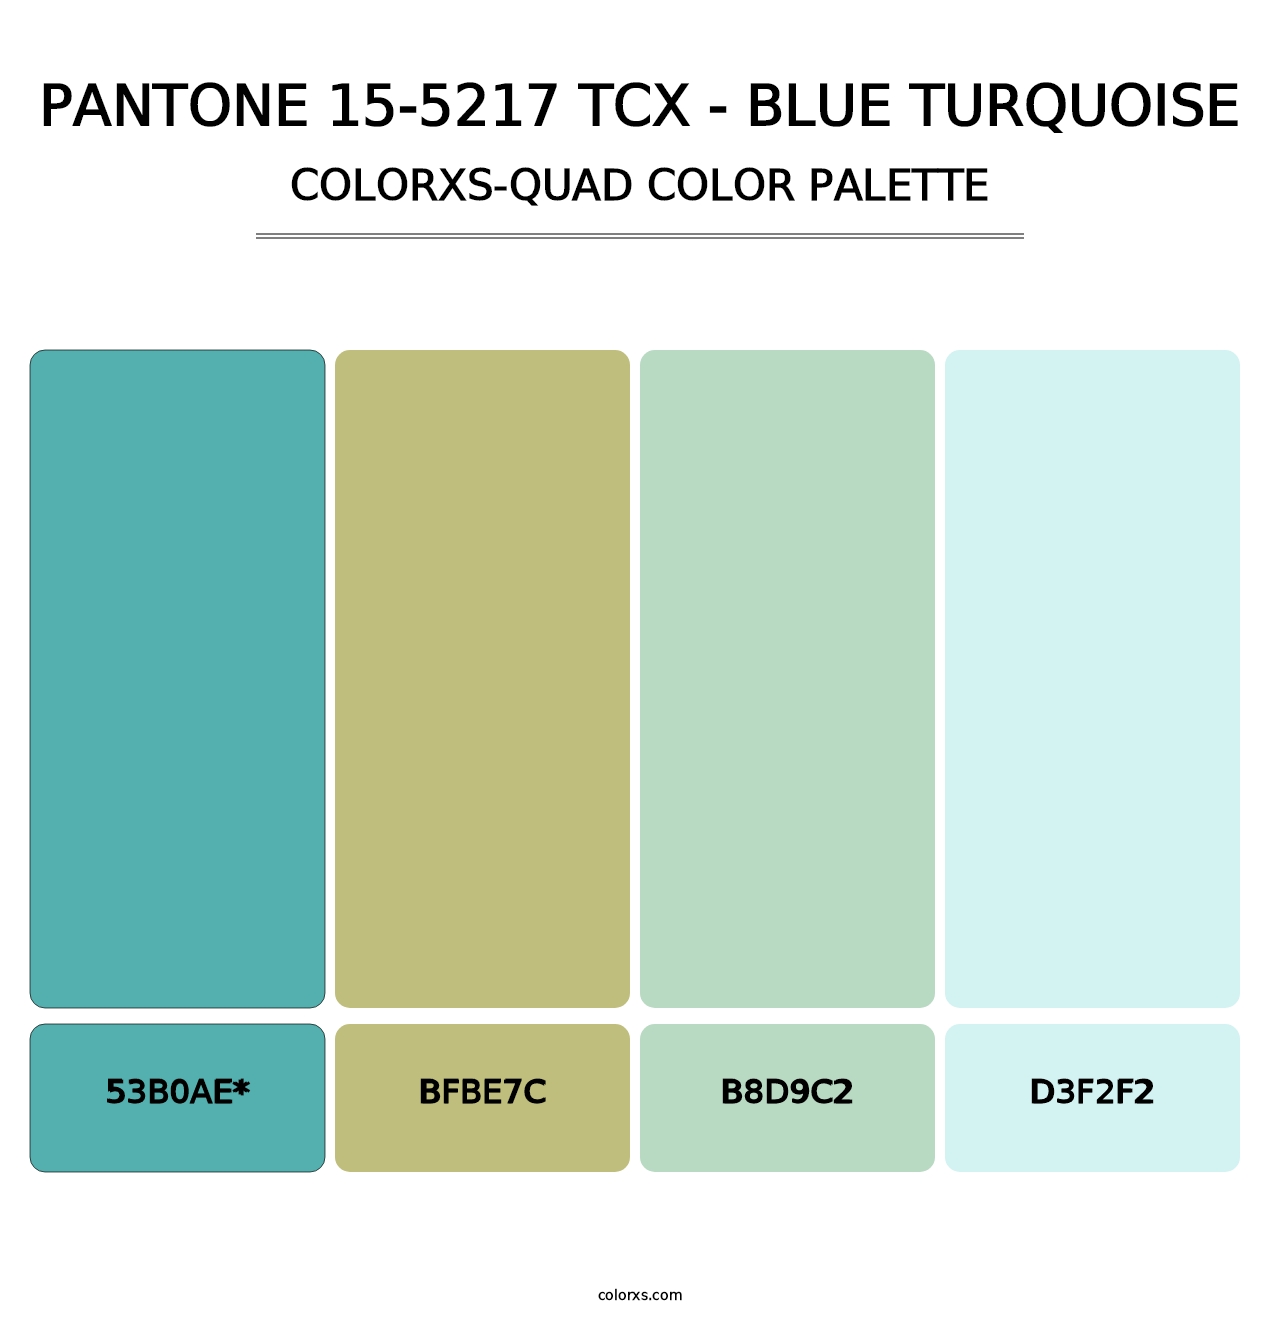 PANTONE 15-5217 TCX - Blue Turquoise - Colorxs Quad Palette